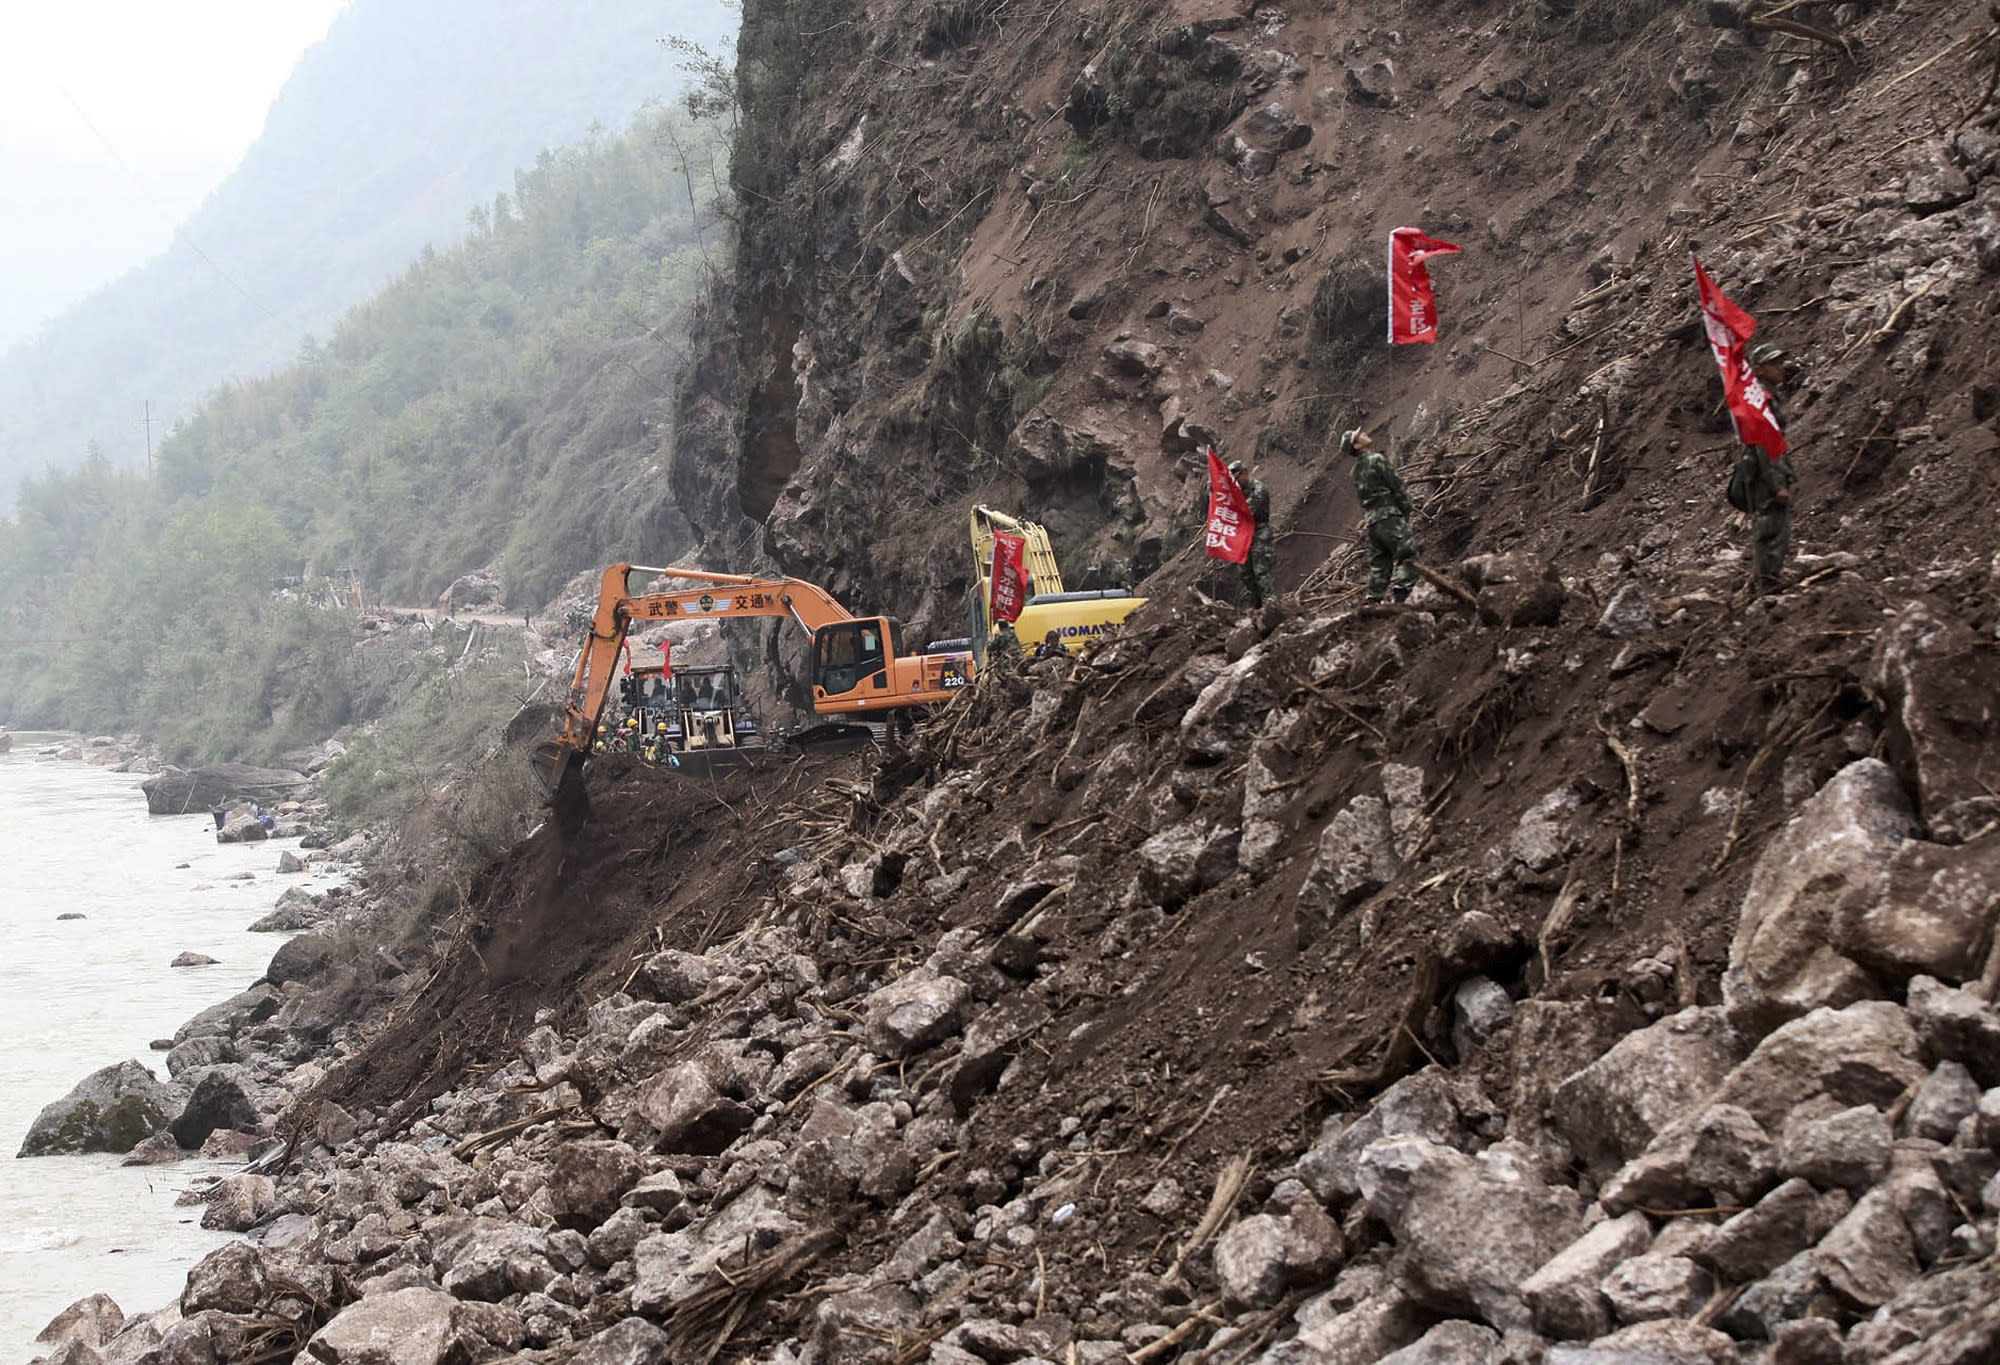 Several killed in China landslide